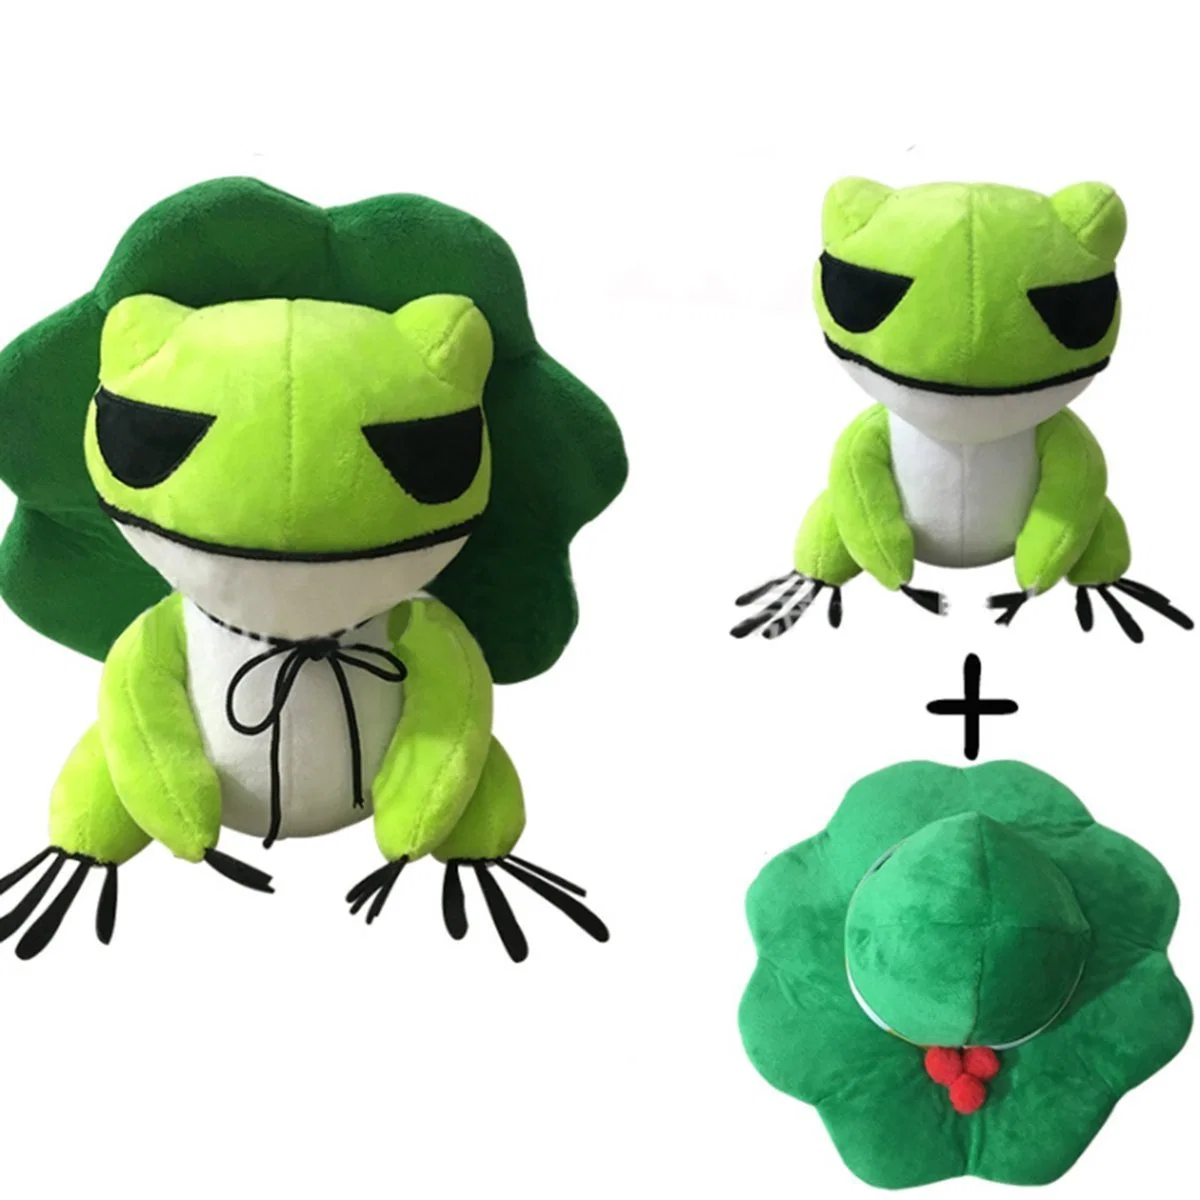 Kawaii Plüsch Puppe Spielzeug Reisen Frosch Zwei Dimensionen Cure Throw Kissen mit abnehmbarem Hut Soft Anhänger Zeug Spielzeug für Erwachsene Kinder